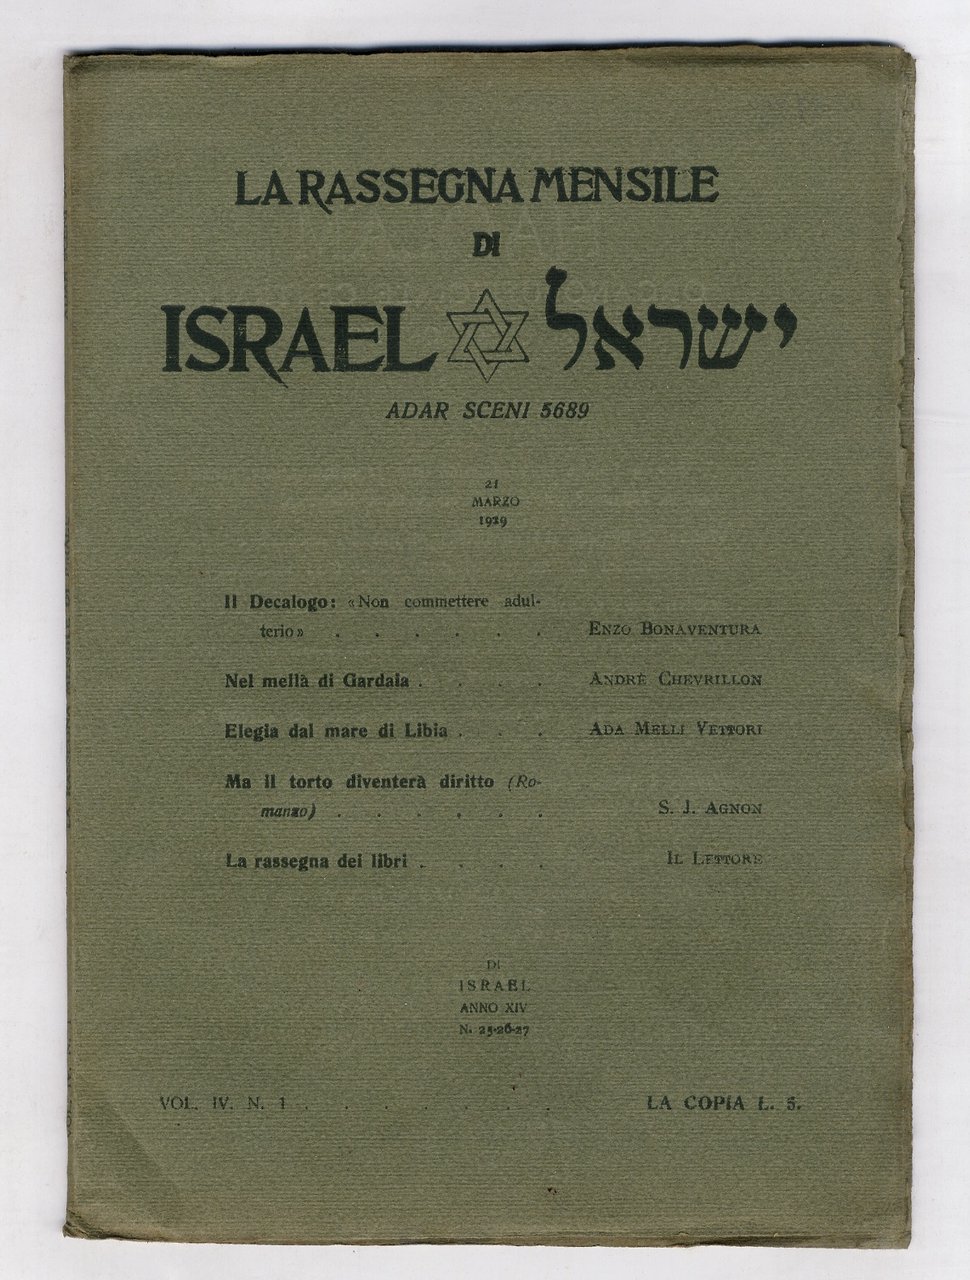 RASSEGNA (LA) mensile di Israel. Vol. IV., N. 1. Adar …